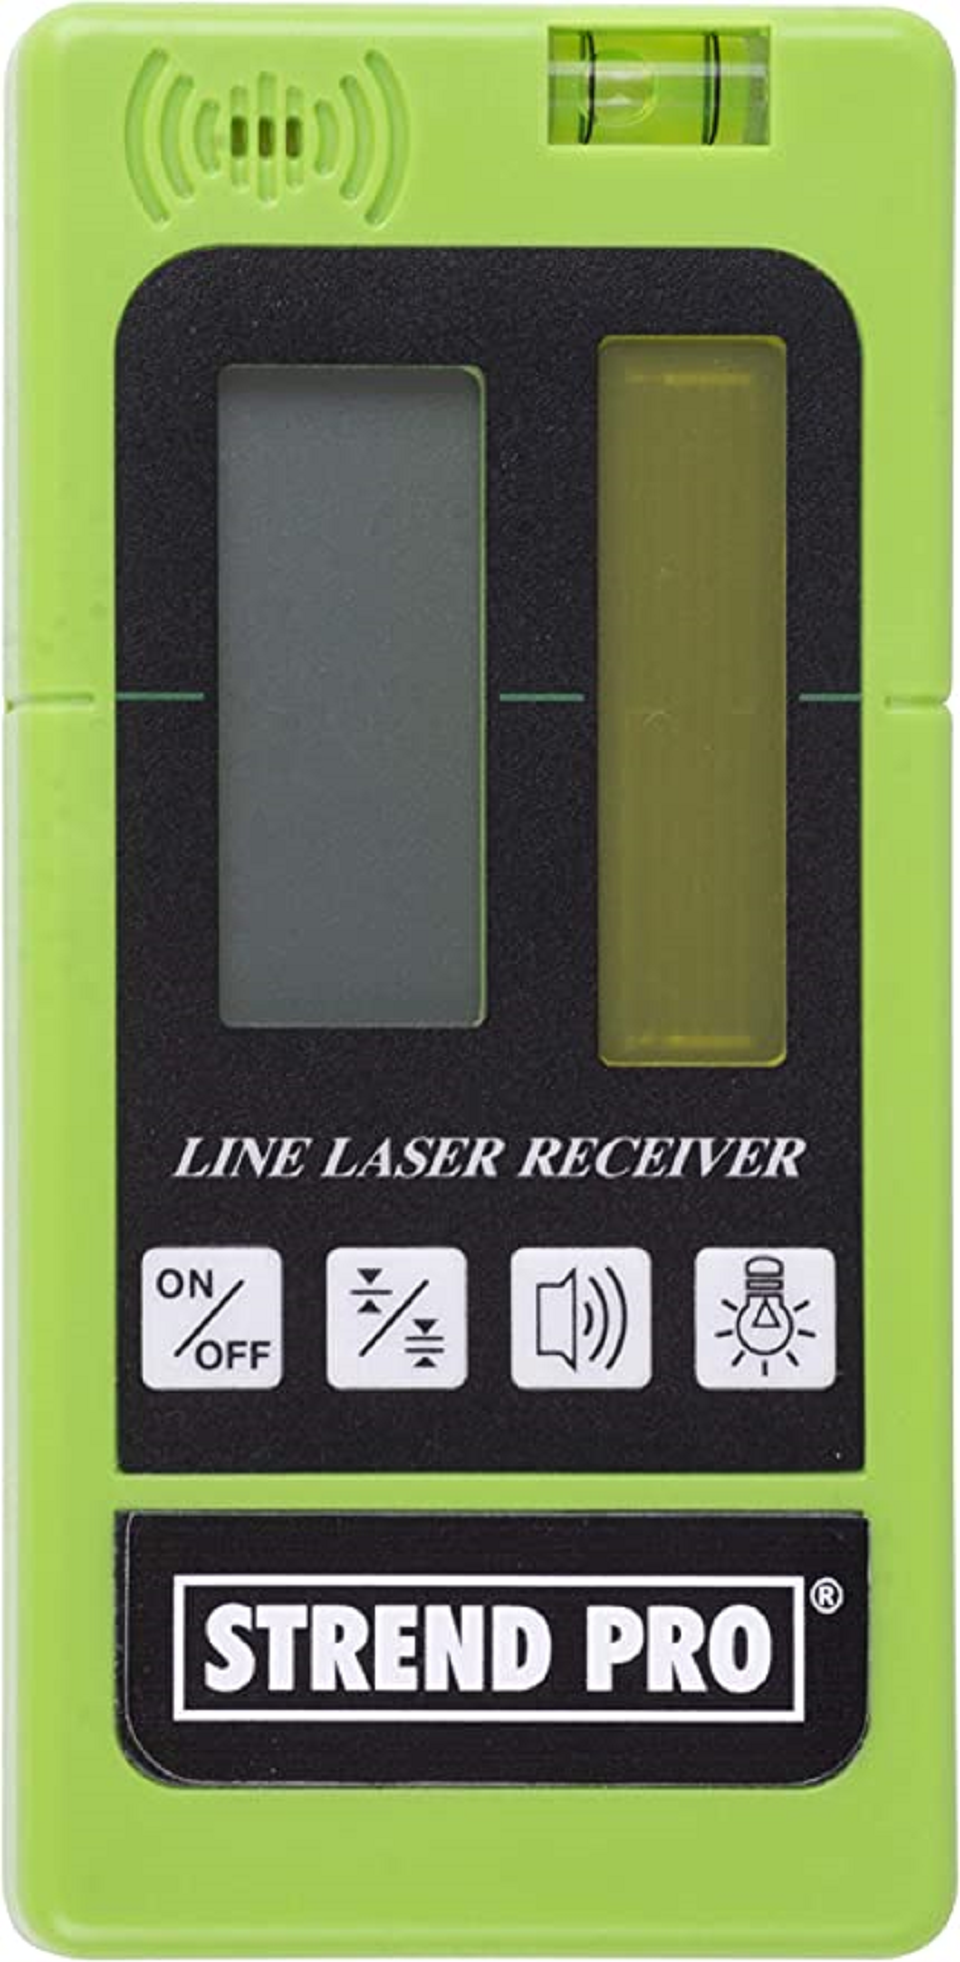 MATRIX Laserempfänger für Kreuzlinienlaser | Digital LED Laser Detektor für grüne und rote Rotationslaser | PULSMODE Arbeiten im Freien 50m | Inkl. Klemmhalter